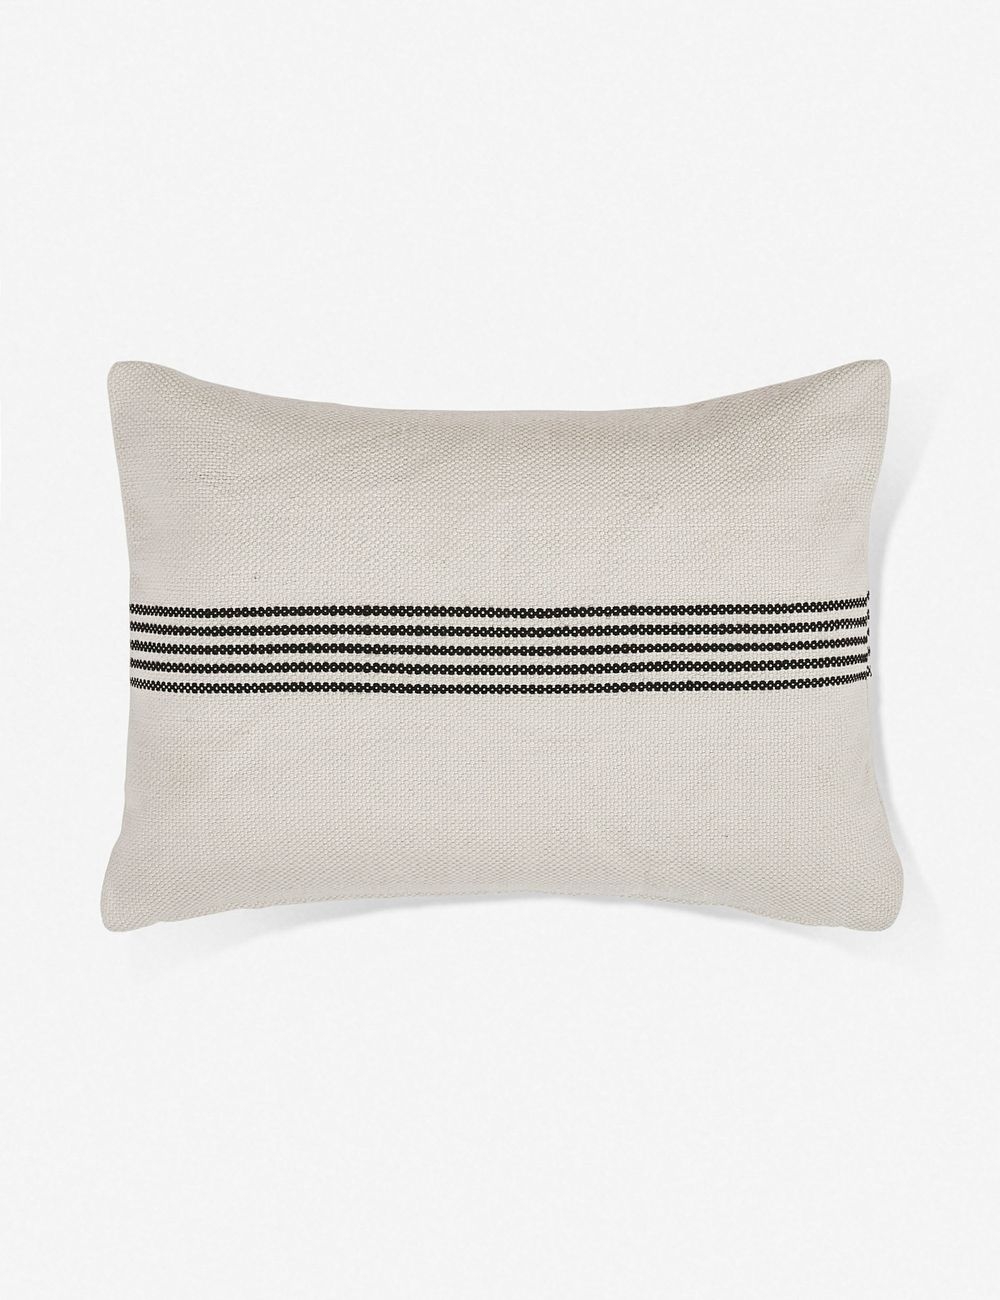 Katya Indoor/Outdoor Lumbar Pillow, Black Stripe, 20" x 14" - Image 0